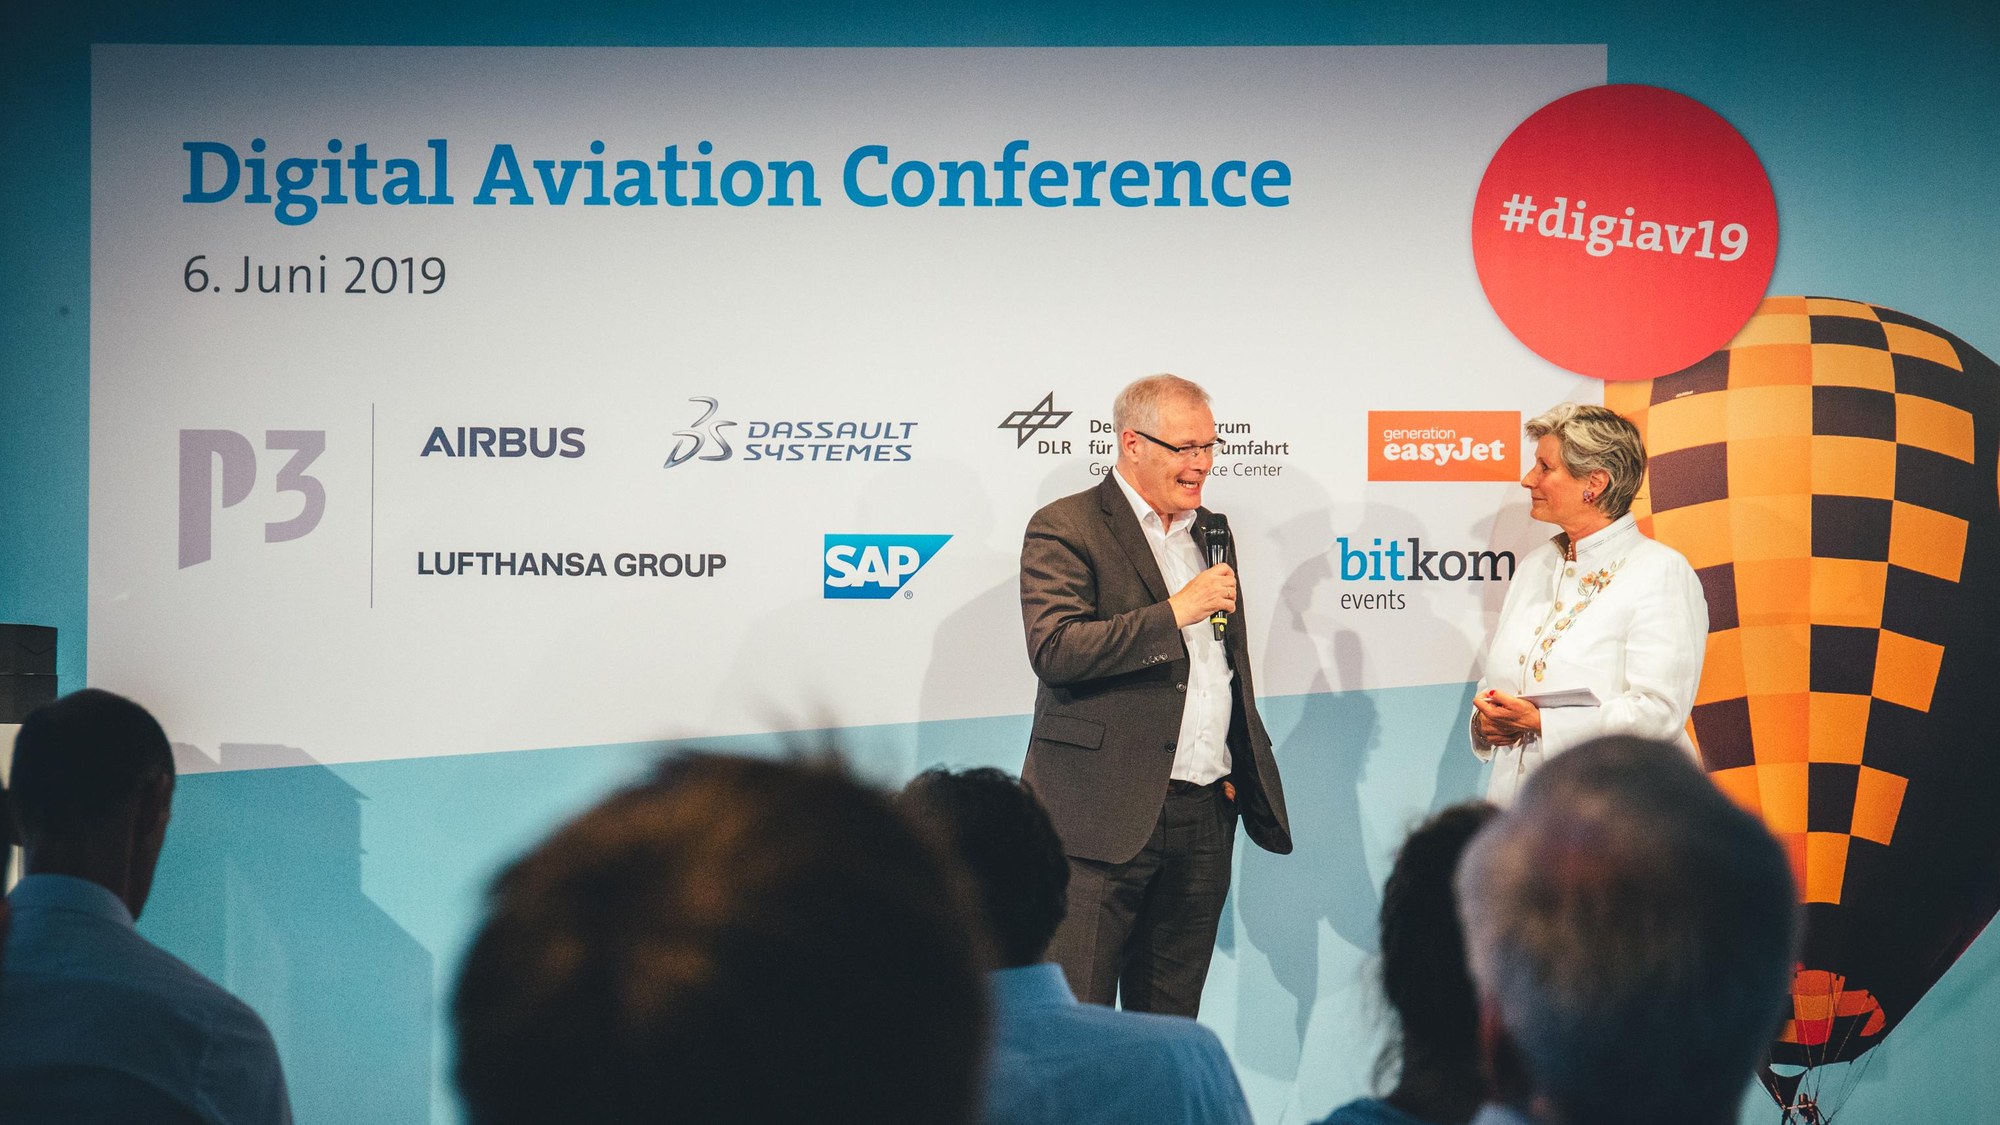 Eröffnung der "Digital Aviation Conference" durch Prof. Rolf Henke